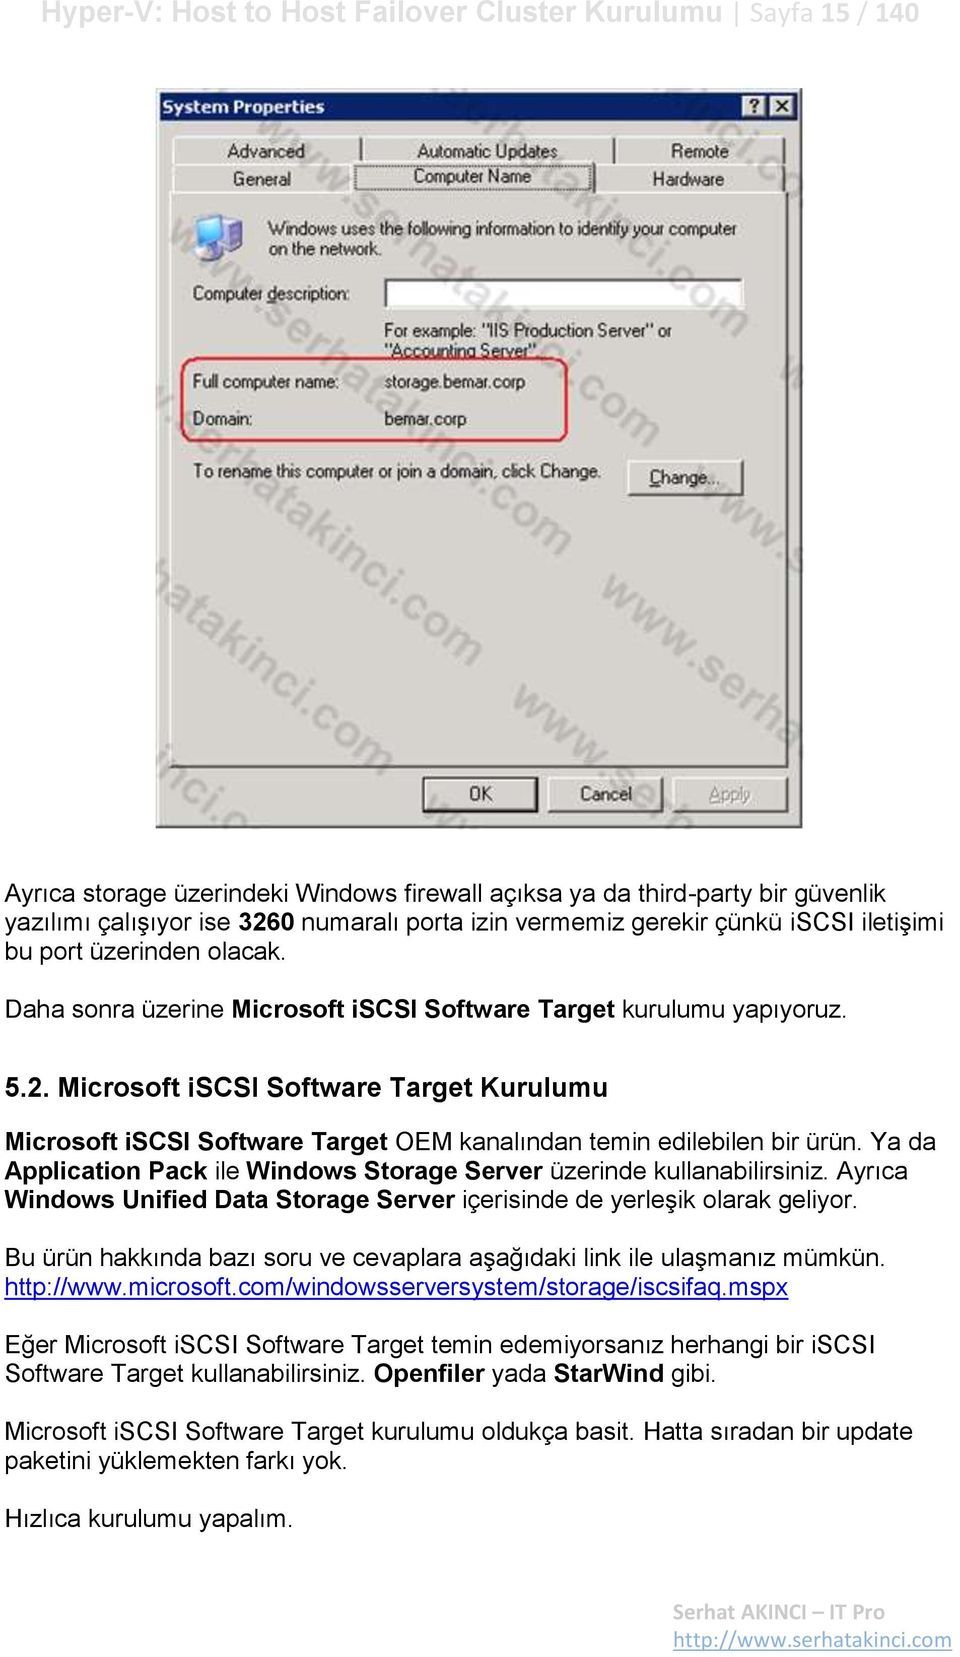 Microsoft iscsi Software Target Kurulumu Microsoft iscsi Software Target OEM kanalından temin edilebilen bir ürün. Ya da Application Pack ile Windows Storage Server üzerinde kullanabilirsiniz.